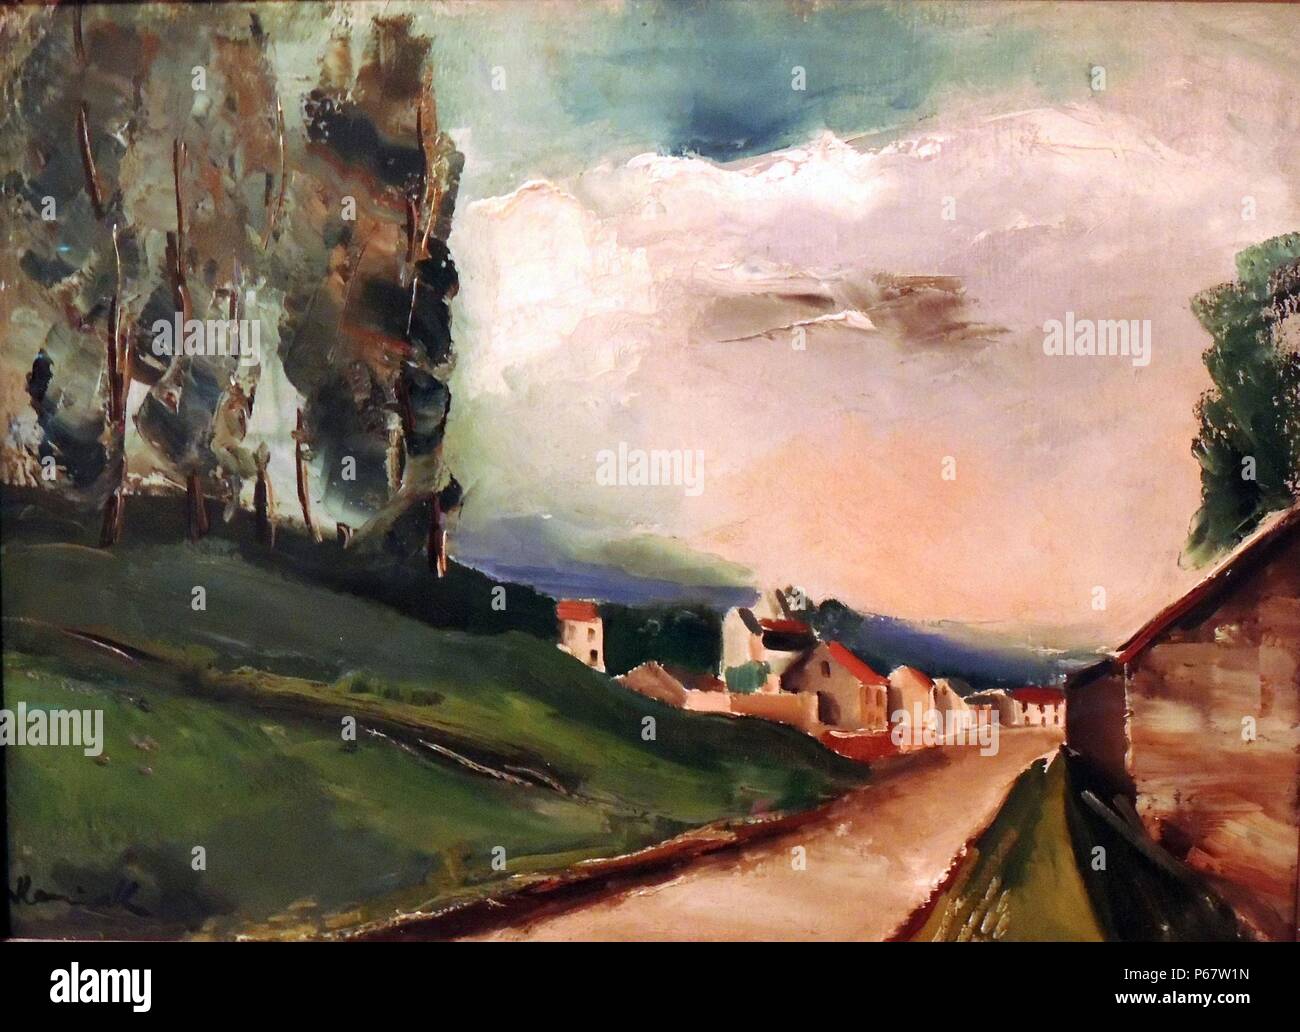 (Die Straße mit Pappeln) La Route avec Les Amandiers C. 1922 von Maurice de Vlaminck, französische Künstler (1876-1958). Öl auf Leinwand. Dies sah die Verwendung der Spachtel und dunkleren Tönen von Blau, Schwarz, Grün und Weiß. Stockfoto